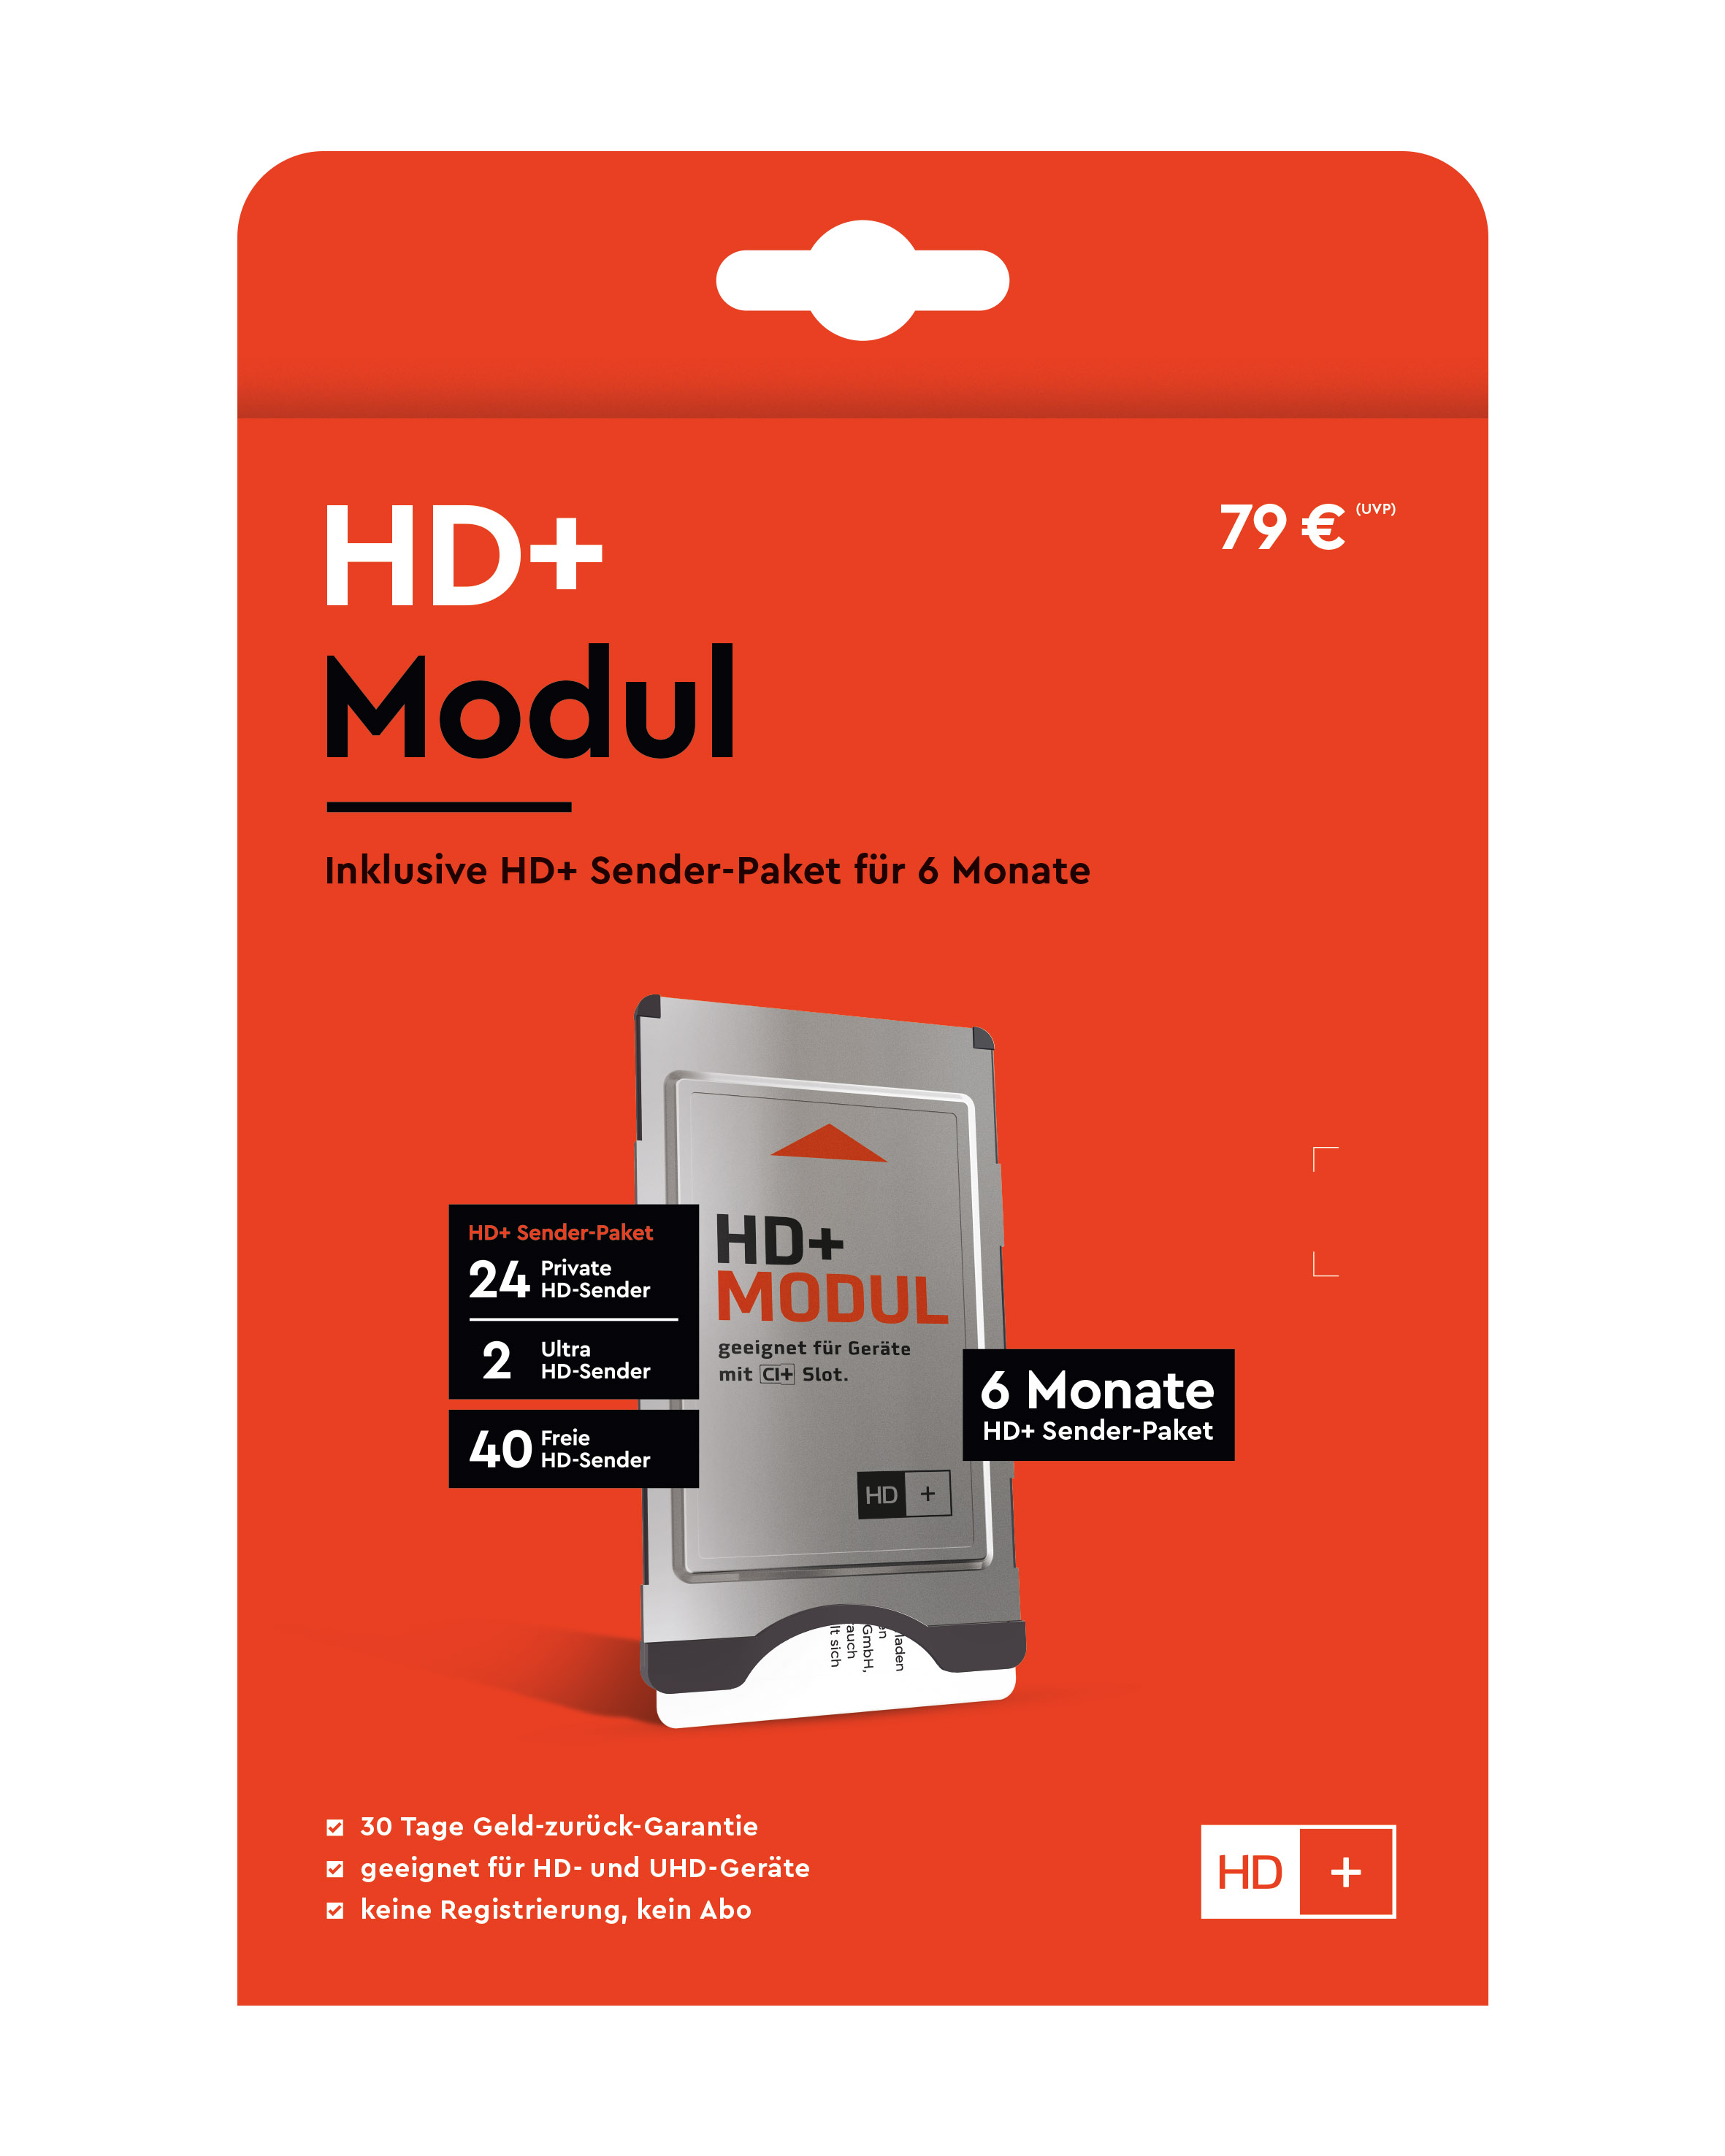 HD PLUS CI+ Modul für 6 Monate (inkl. HD+ Karte, geeignet für HD und UHD, für Satellitenempfang)